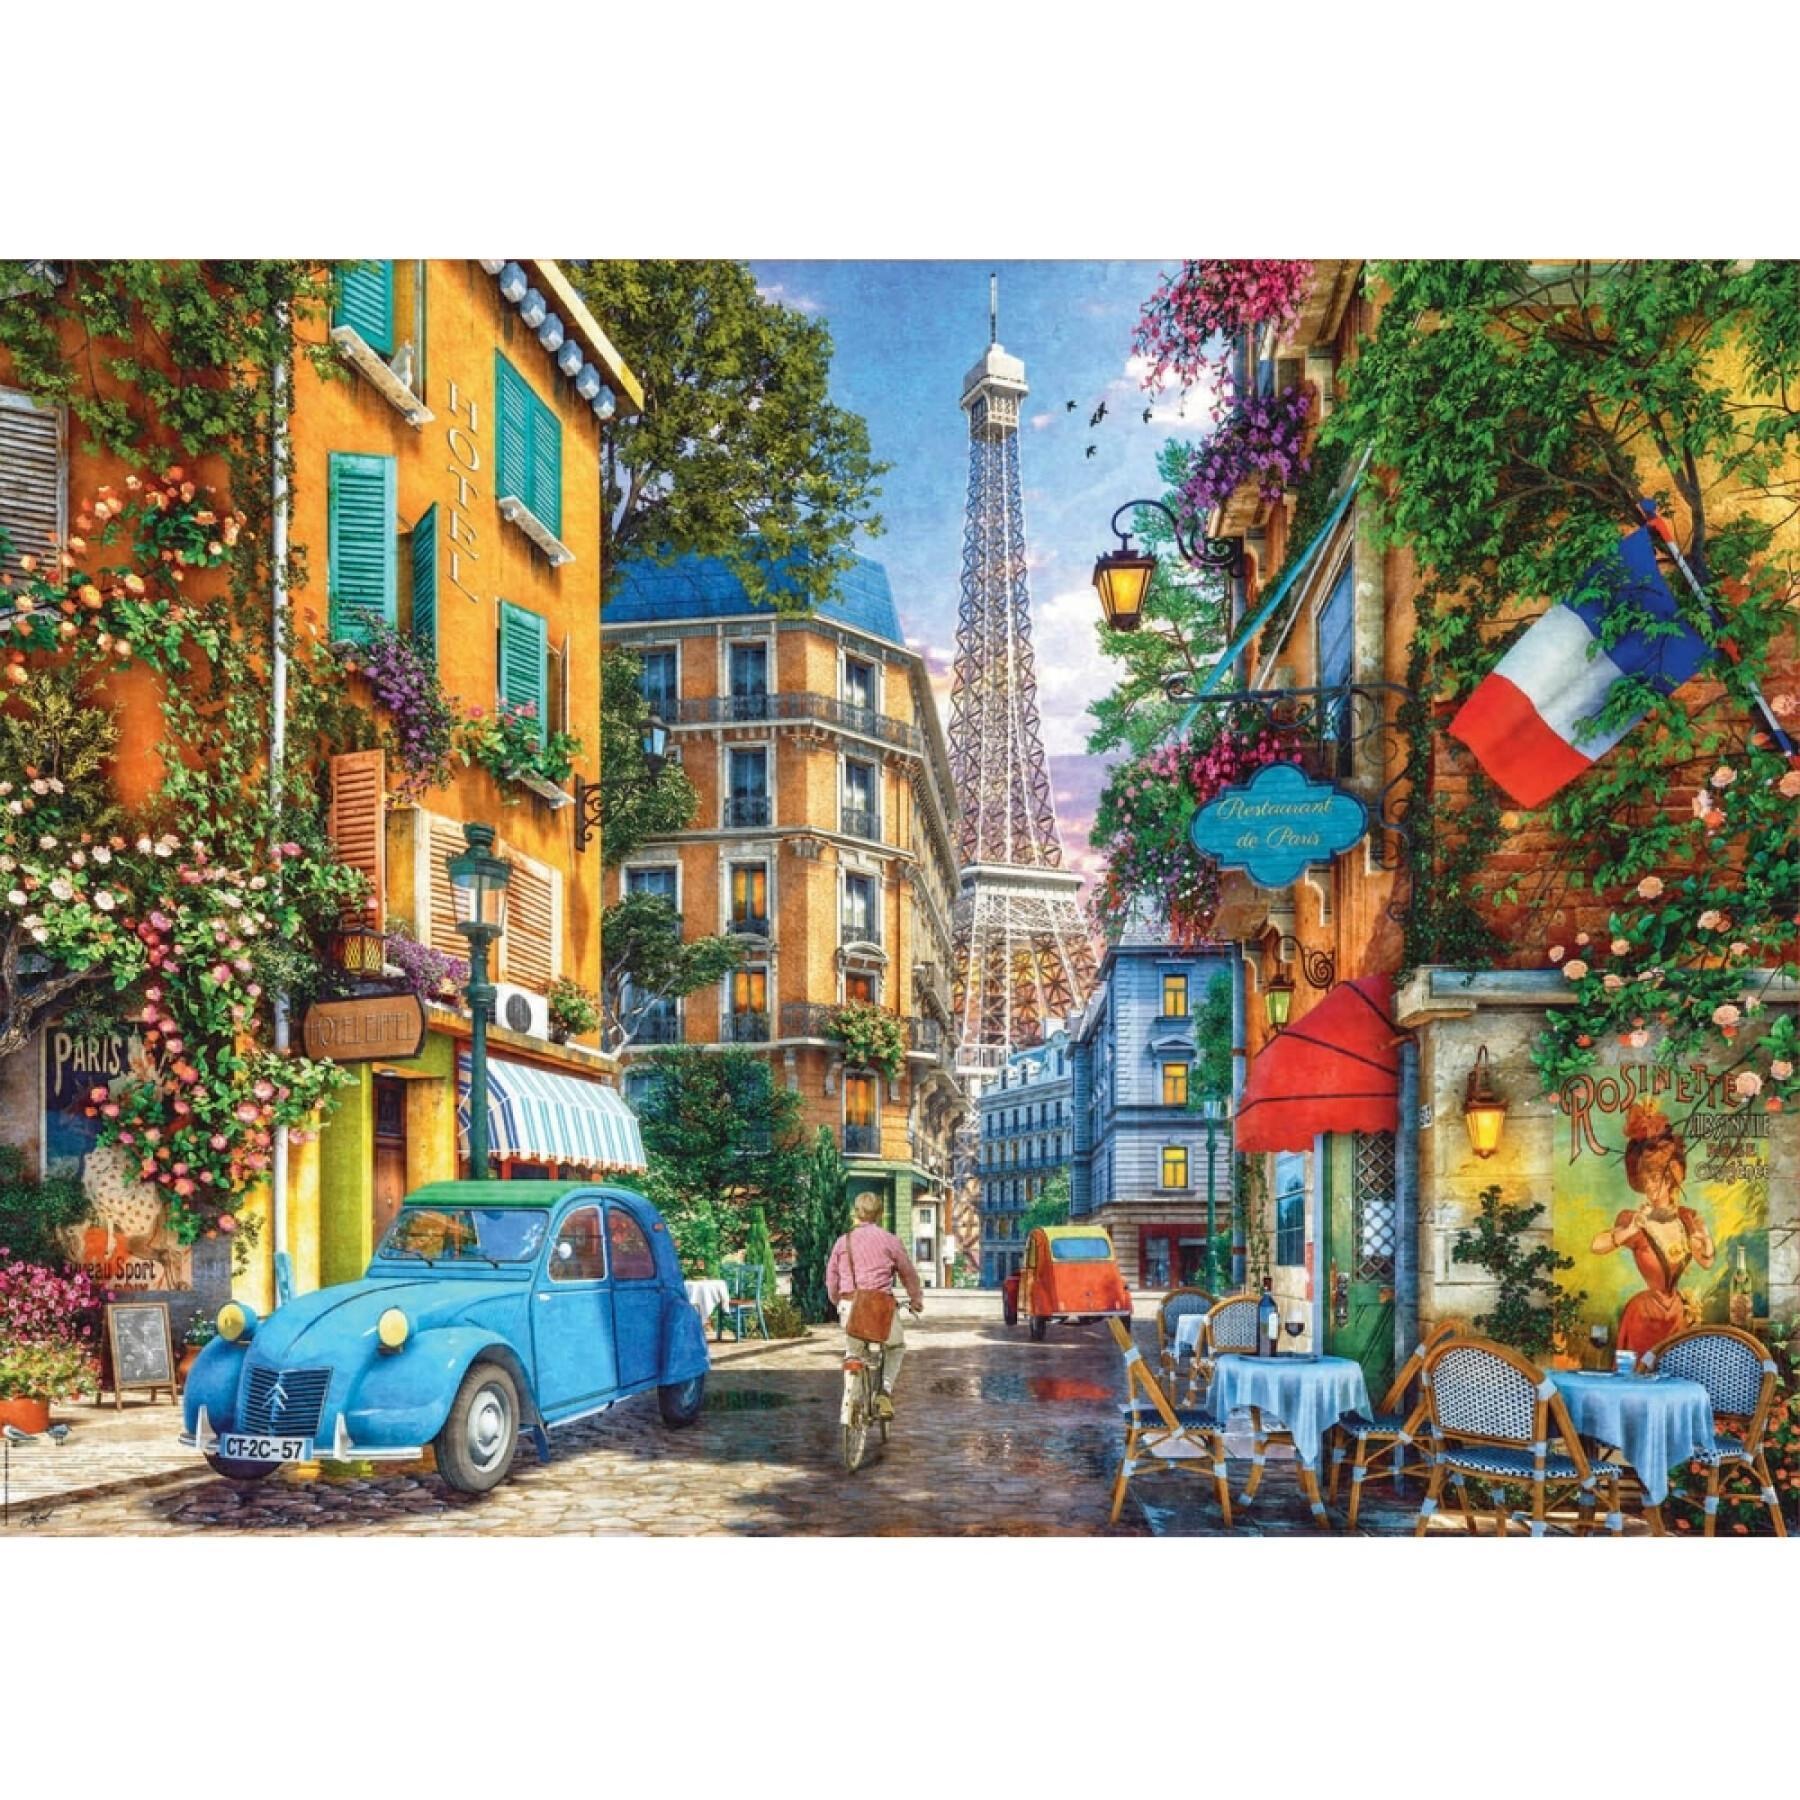 4000 stukjes puzzel Educa Calles Paris